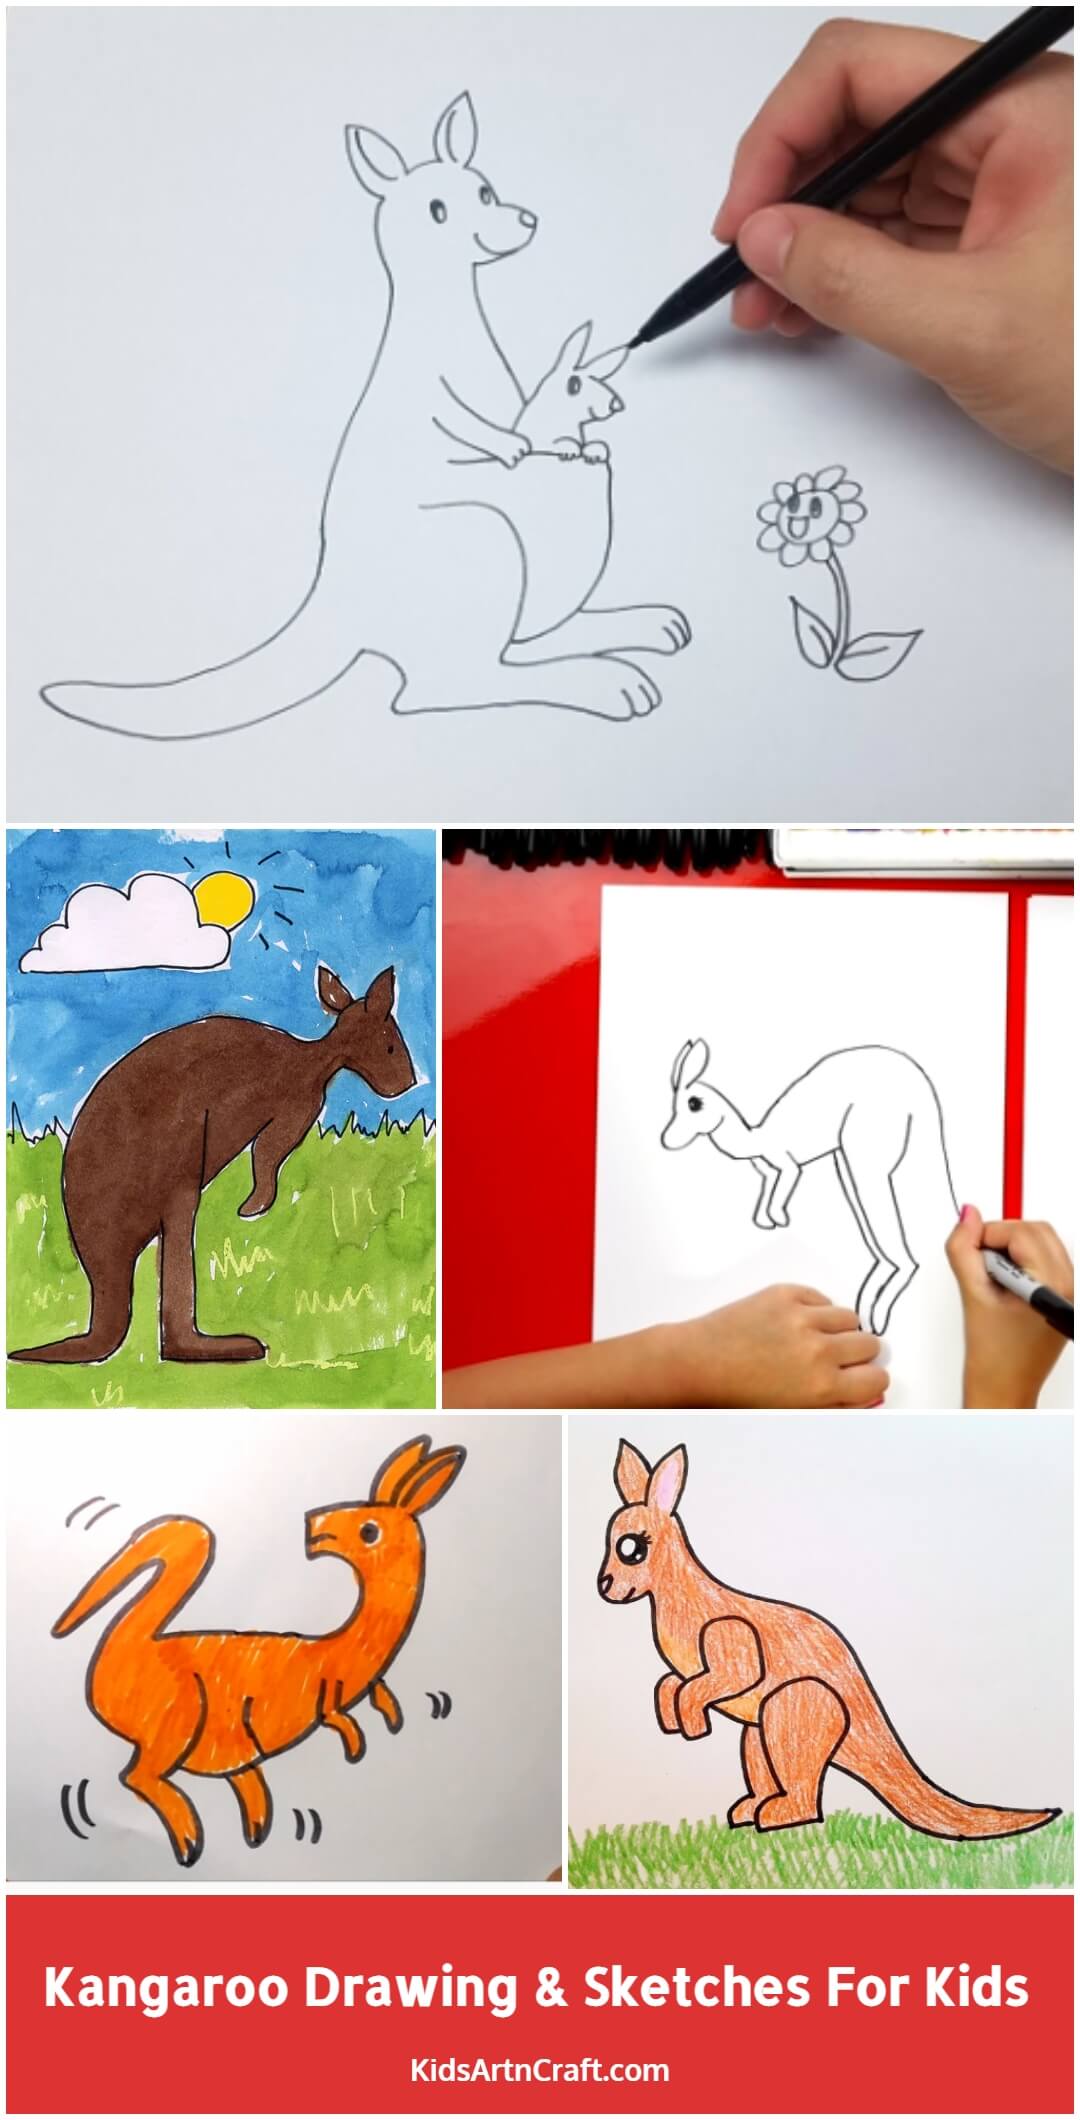 Kangaroo Drawing & Sketches For Kids - Kids Art & Craft